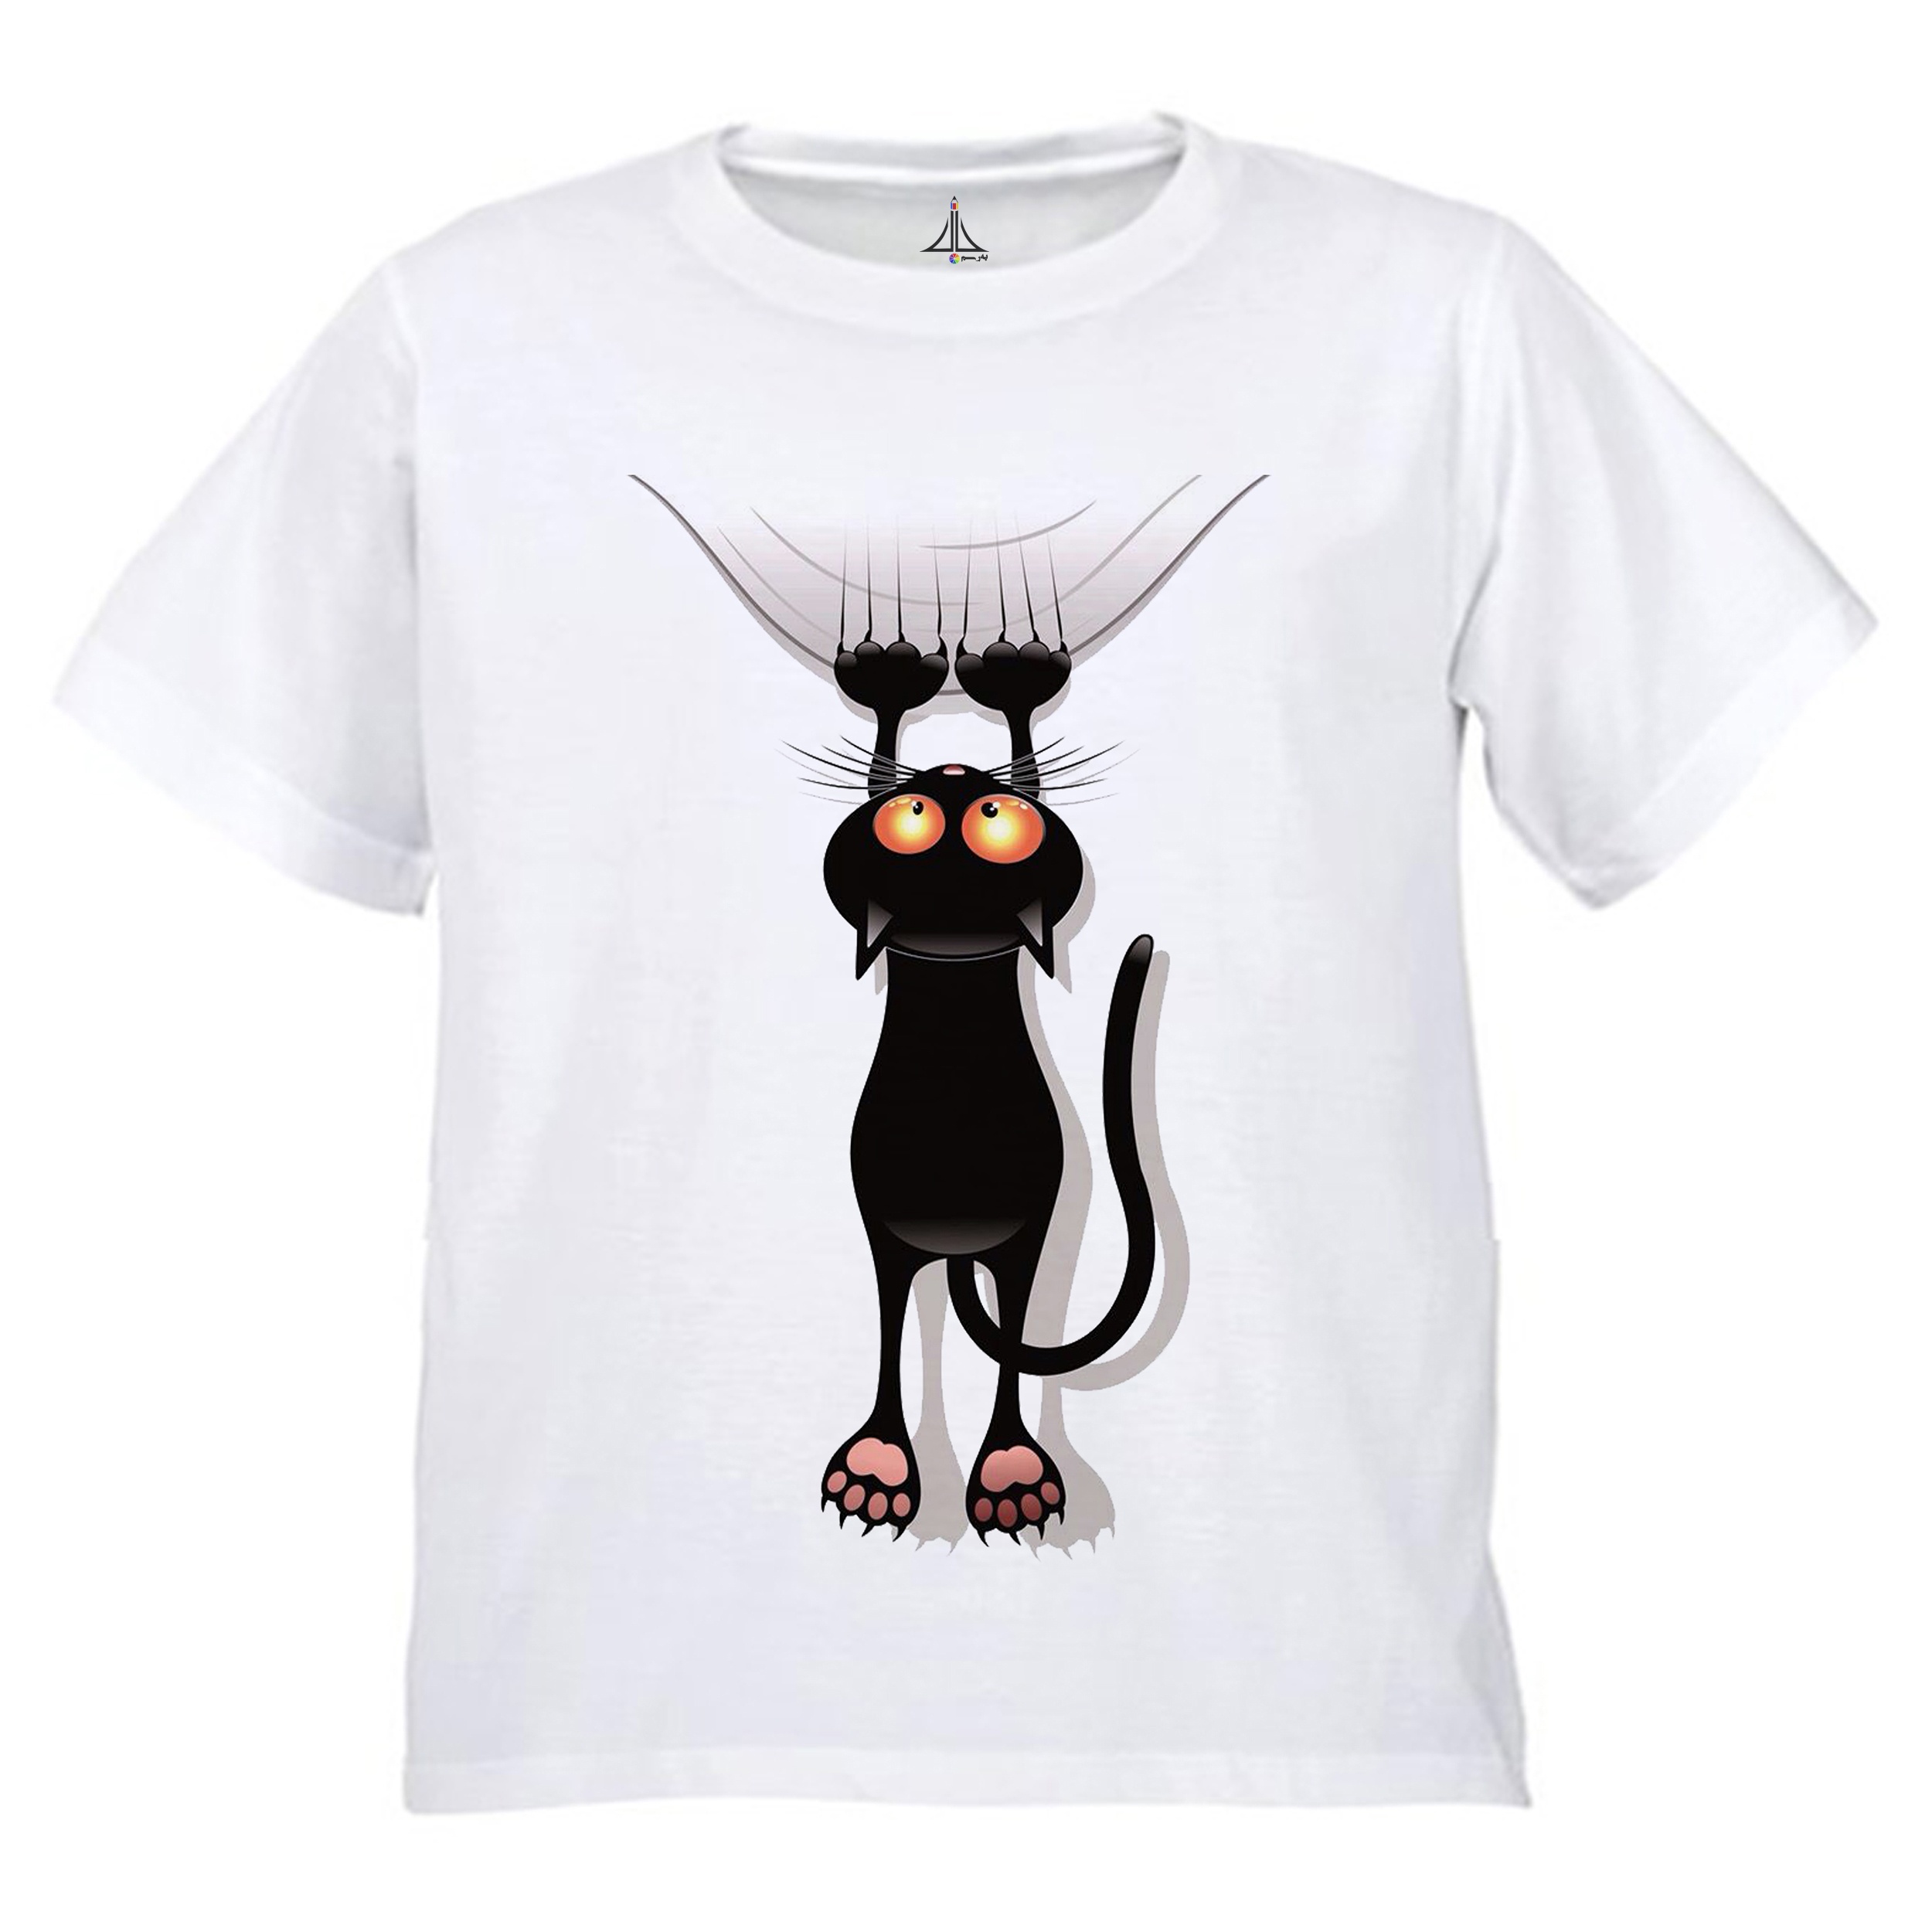 تی شرت پسرانه به رسم طرح گربه کد 9902